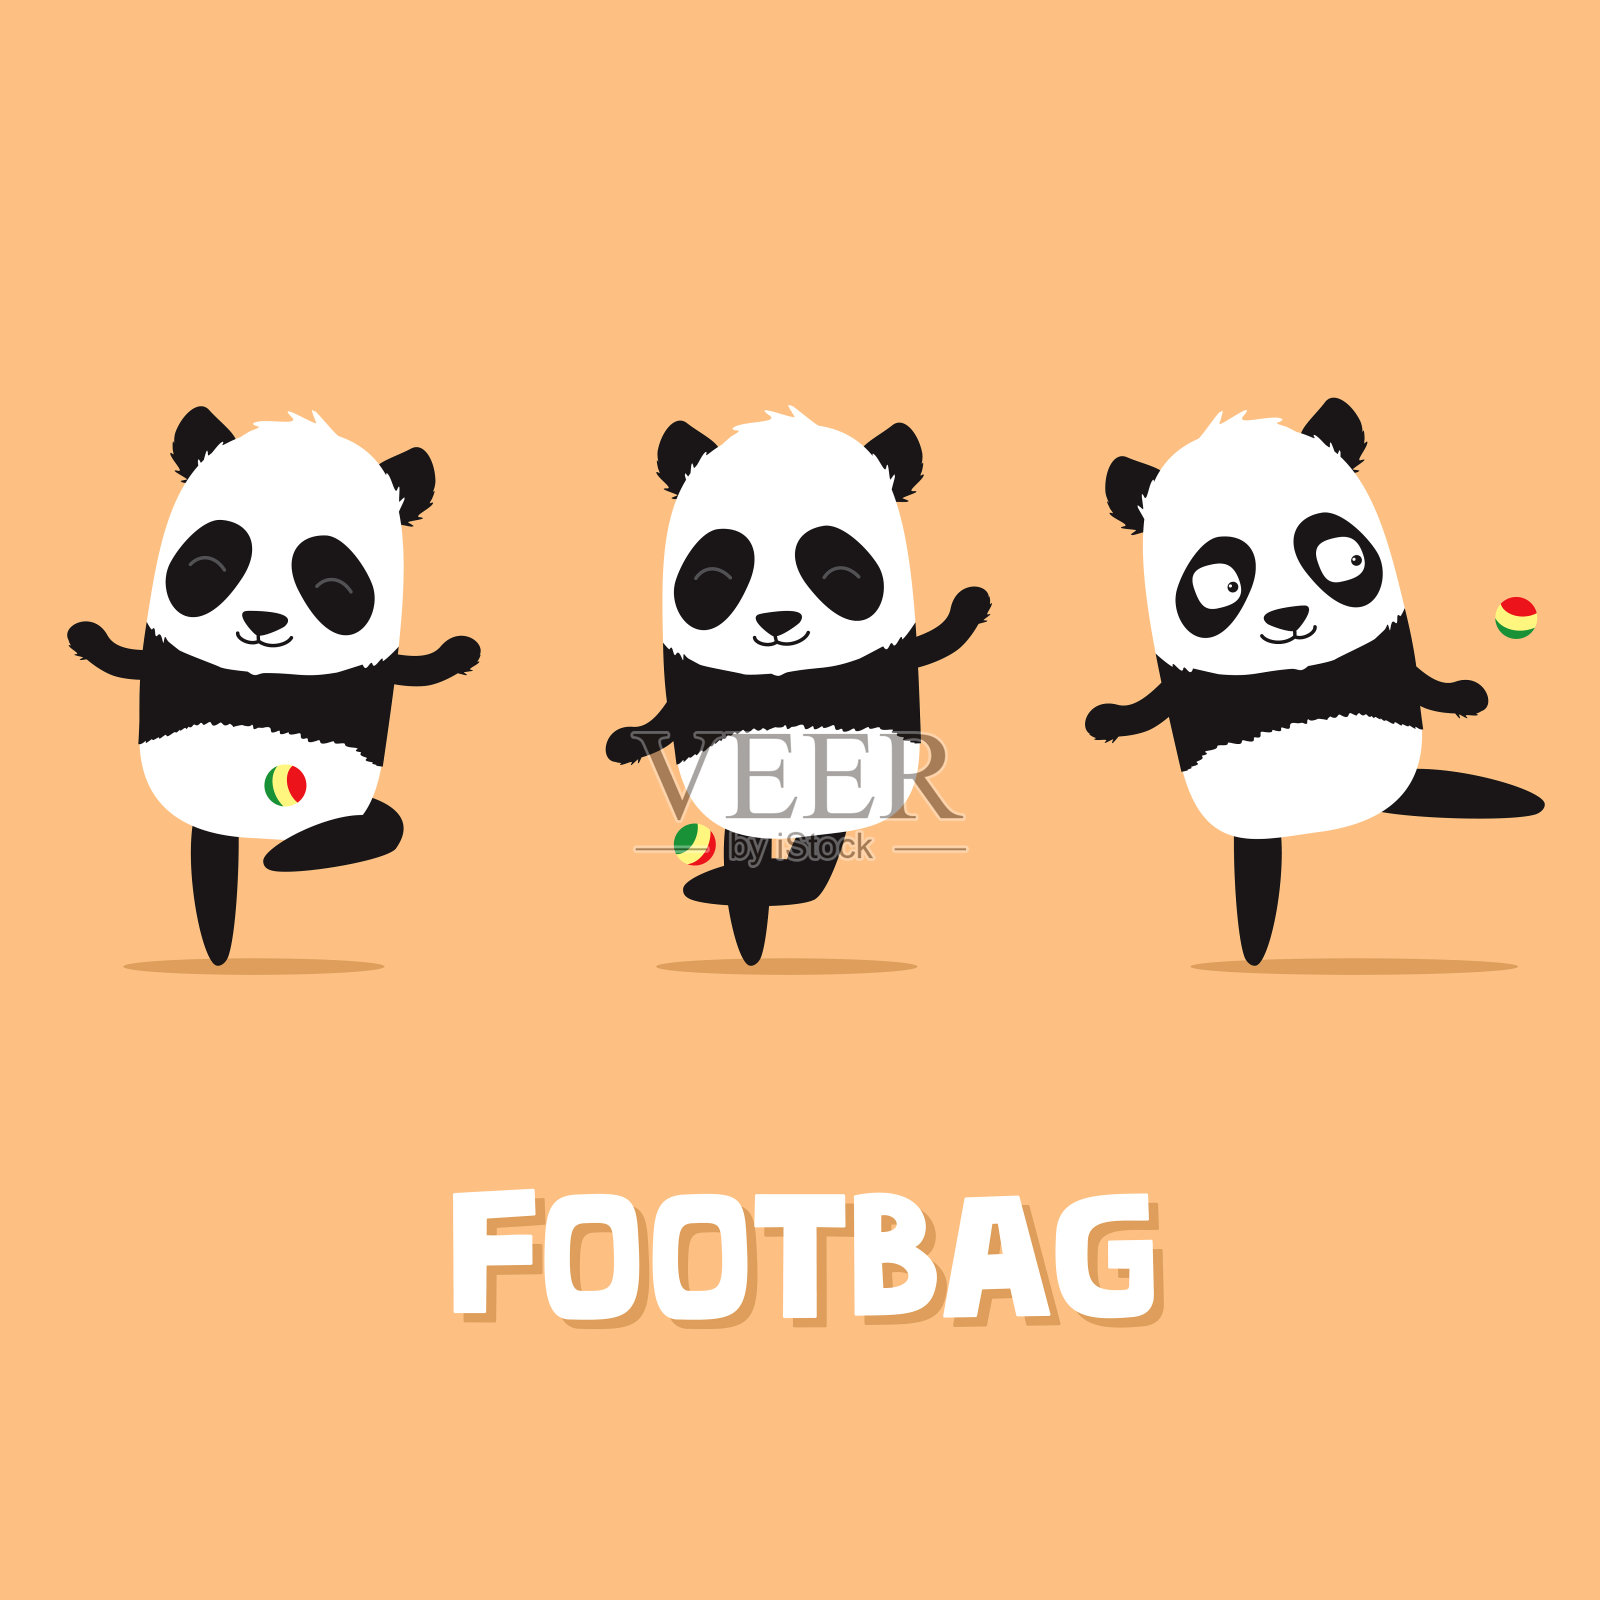 可爱的卡通熊猫玩自由式footbag和做戏法在3个不同的姿势。插画图片素材